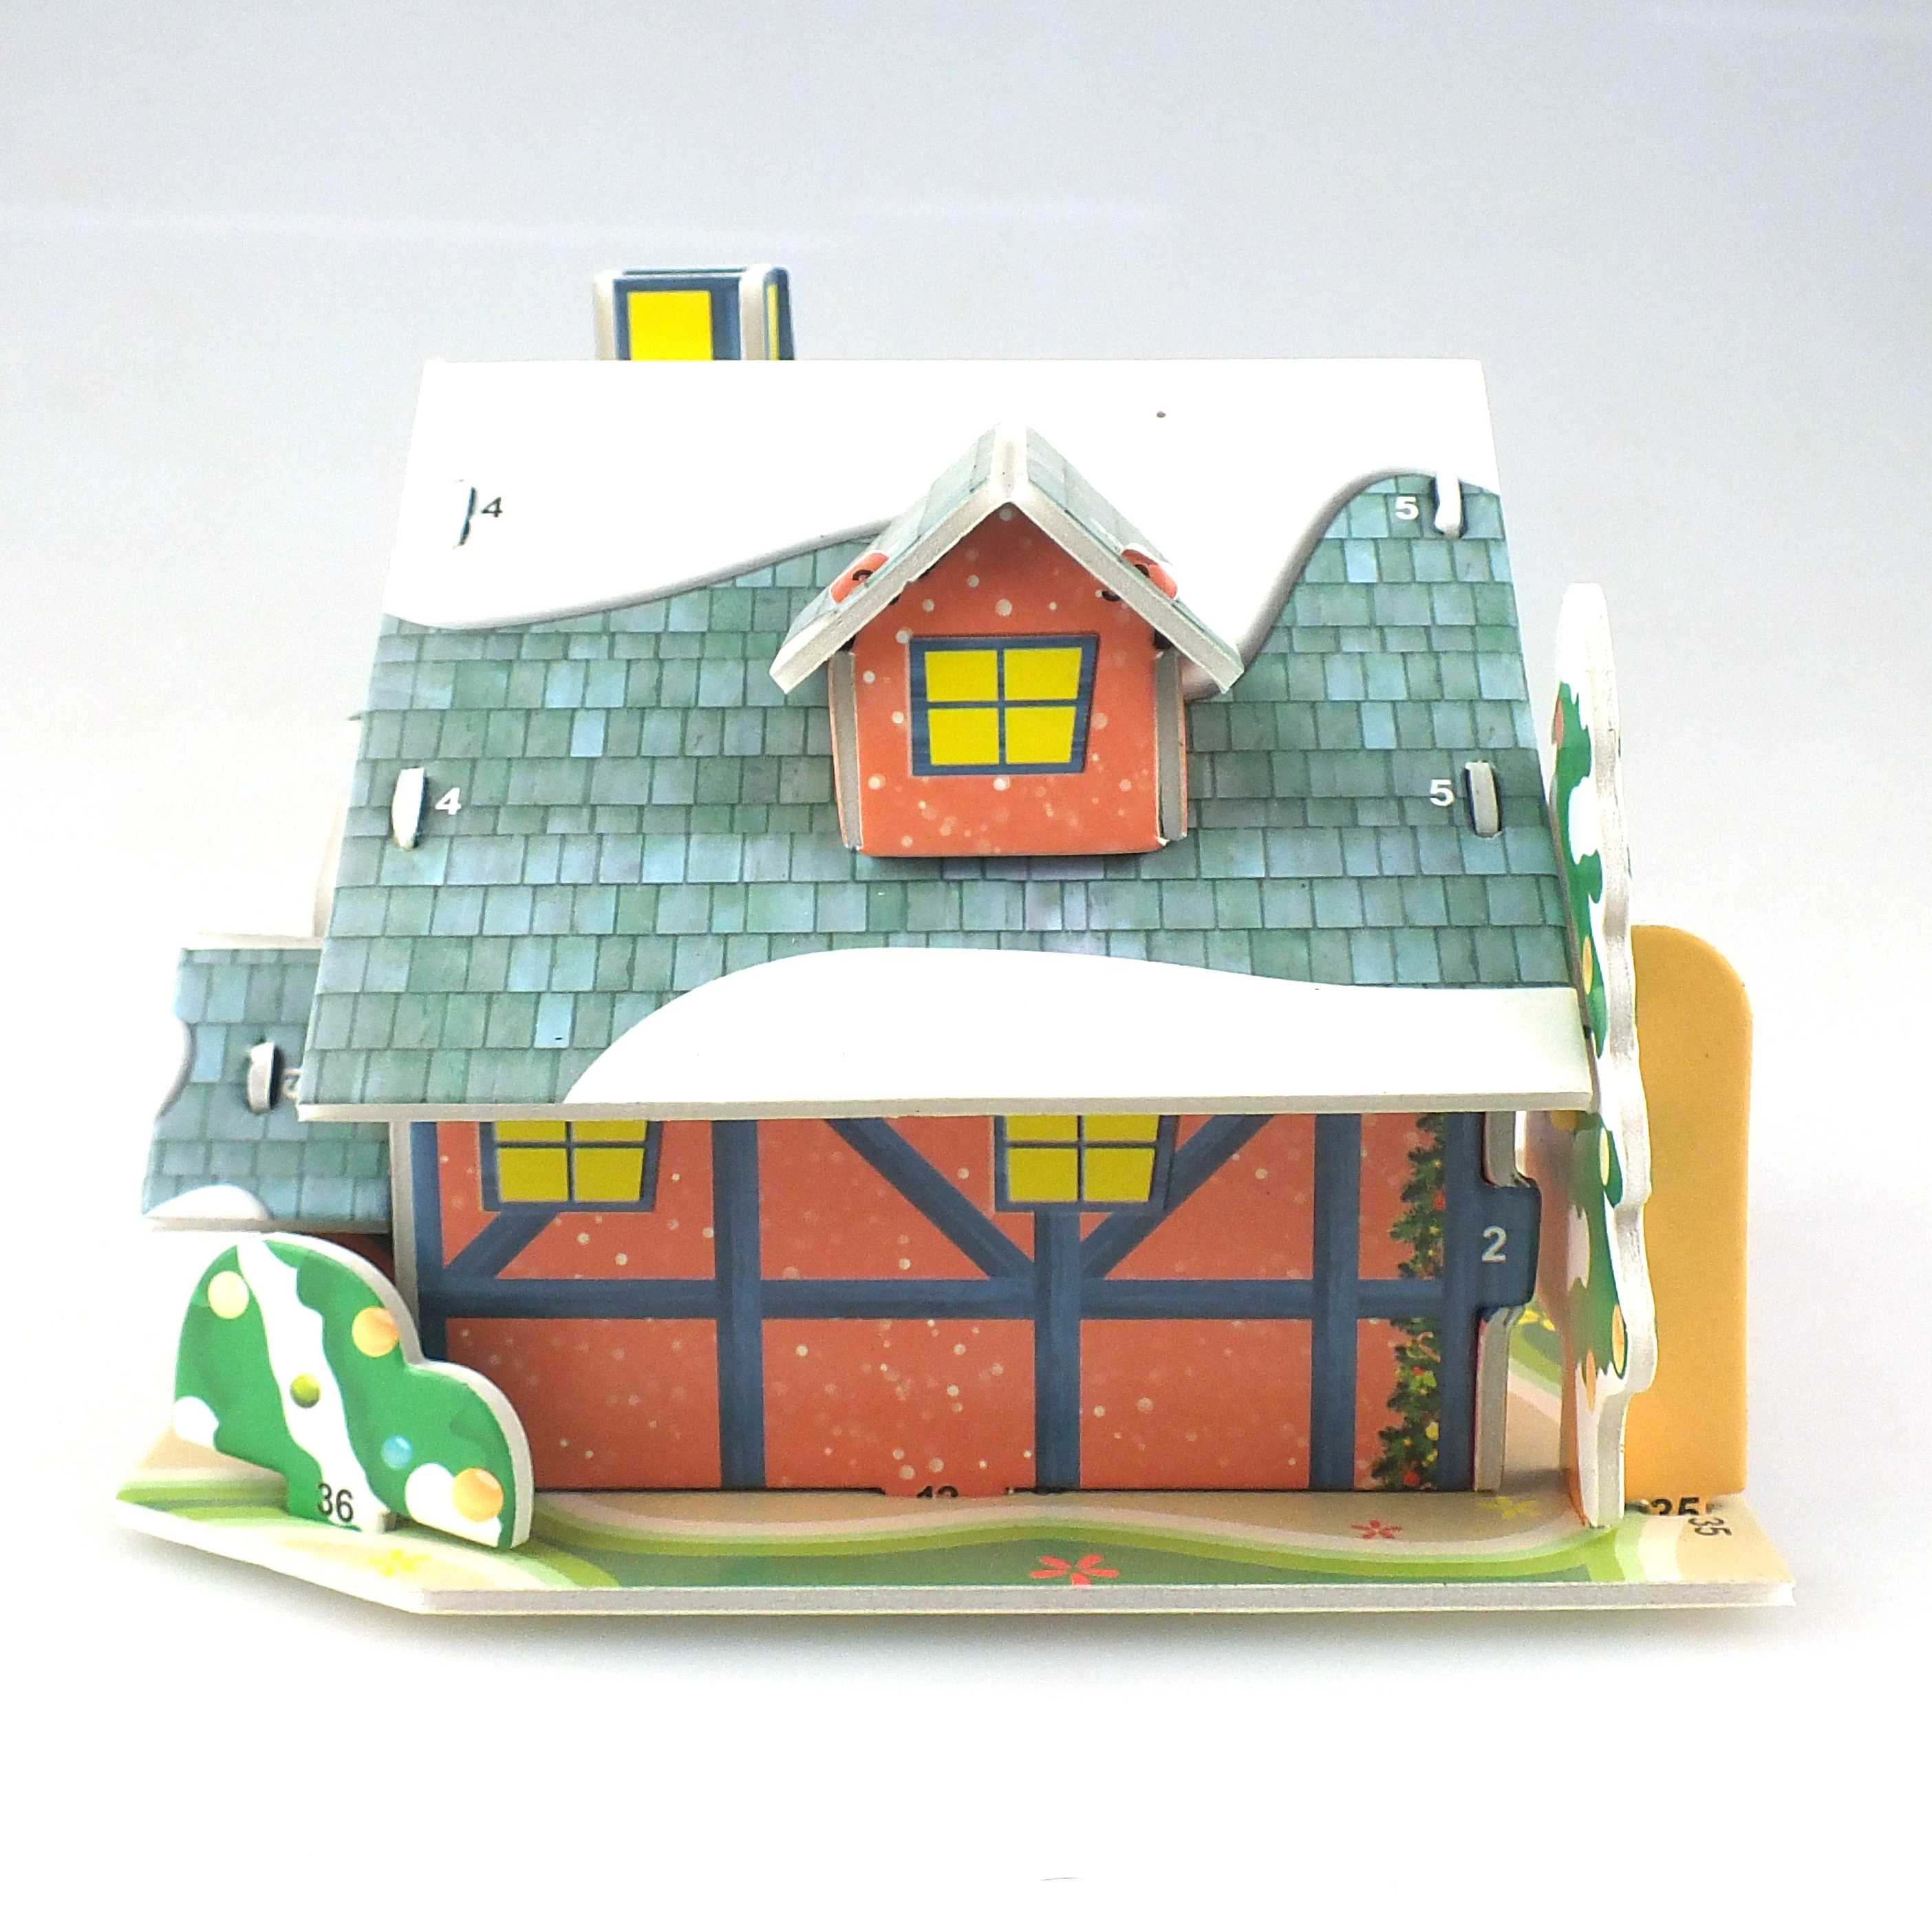 3D  Puzzle Fancy Toys Christmas Villa Puzzle Souvenir Free of Sharp Edges Nontoxic Painting